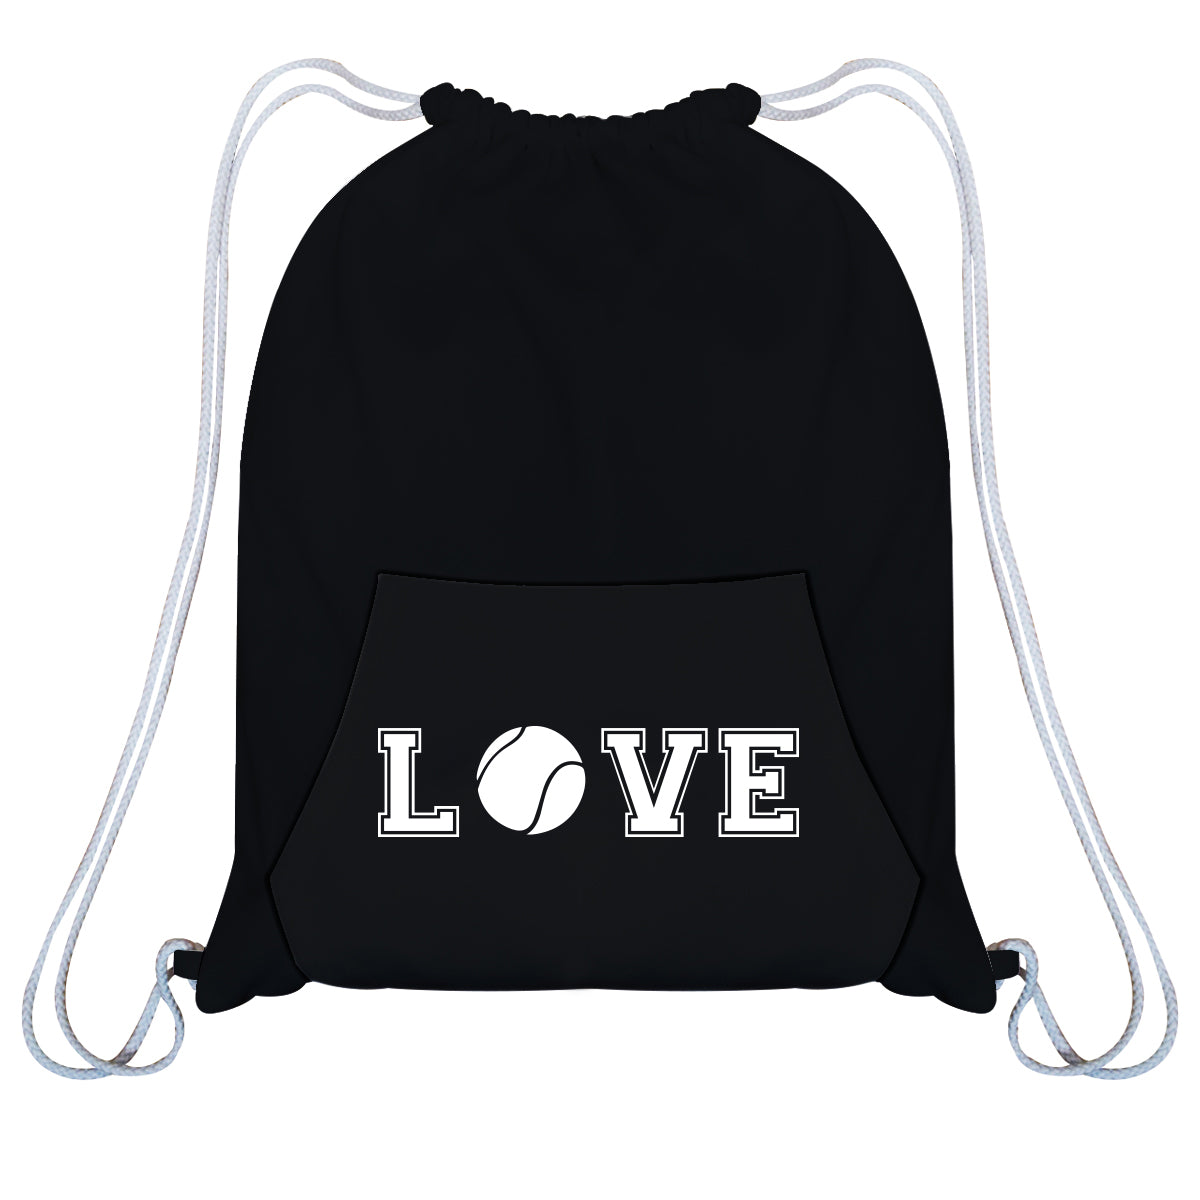 Tennis Love Black Fleece Gym Bag With Kangaroo Pocket